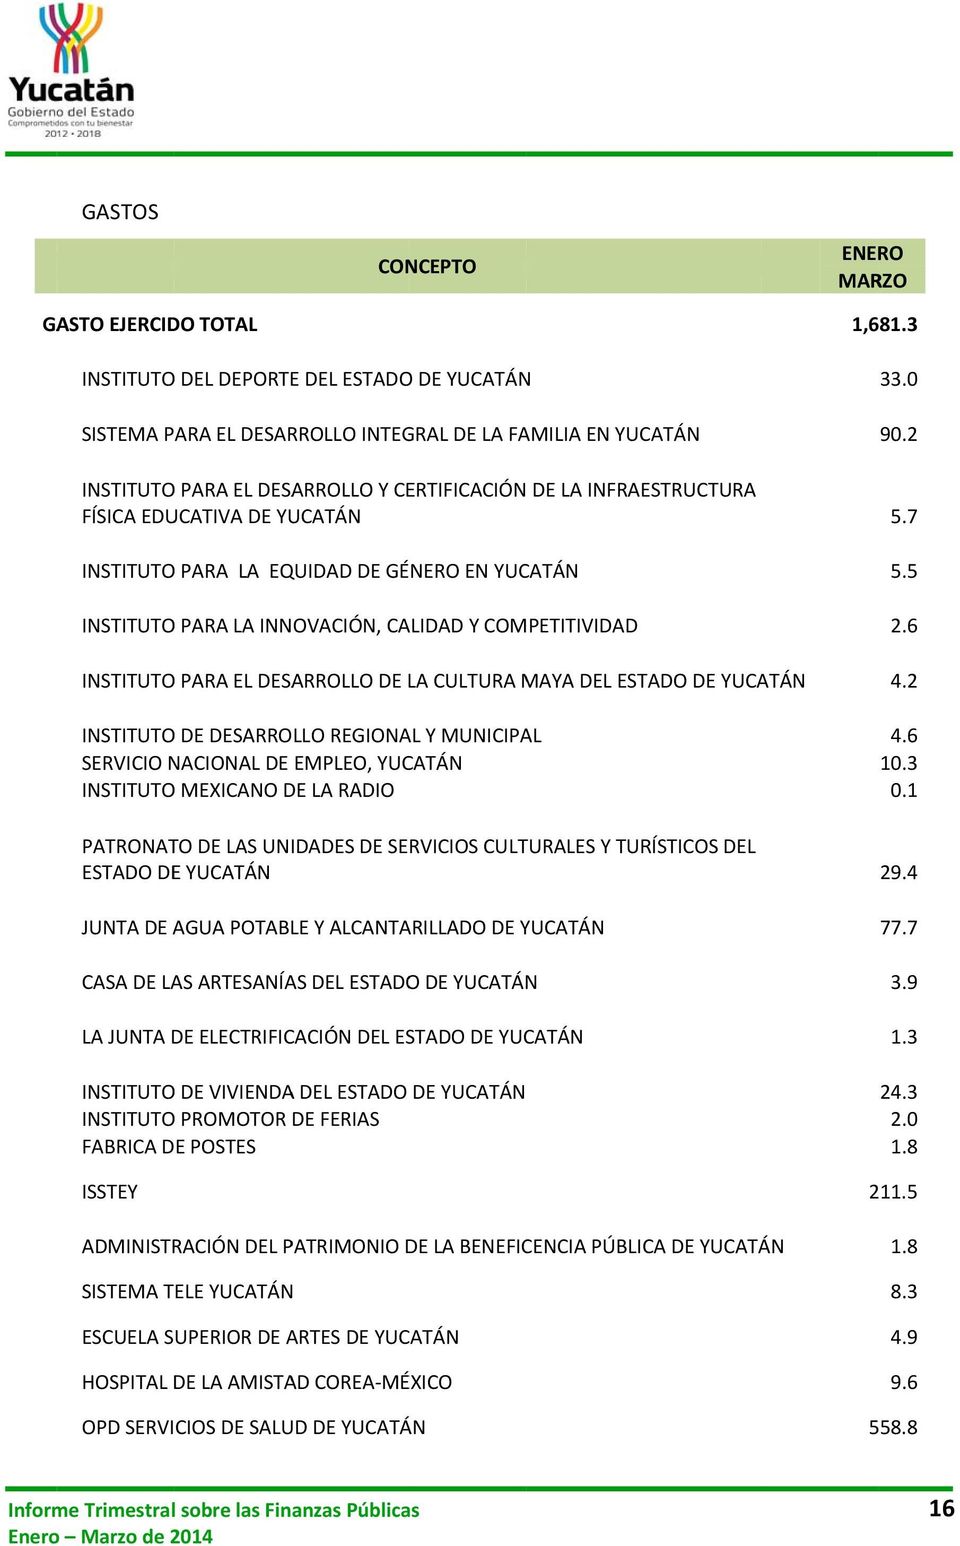 DEL ESTADO DE YUCATÁN INSTITUTO DE DESARROLLO REGIONAL Y MUNICIPAL SERVICIO NACIONAL DE EMPLEO, YUCATÁN INSTITUTO MEXICANO DE LA RADIO PATRONATO DE LAS UNIDADES DE SERVICIOS CULTURALES Y TURÍSTICOS